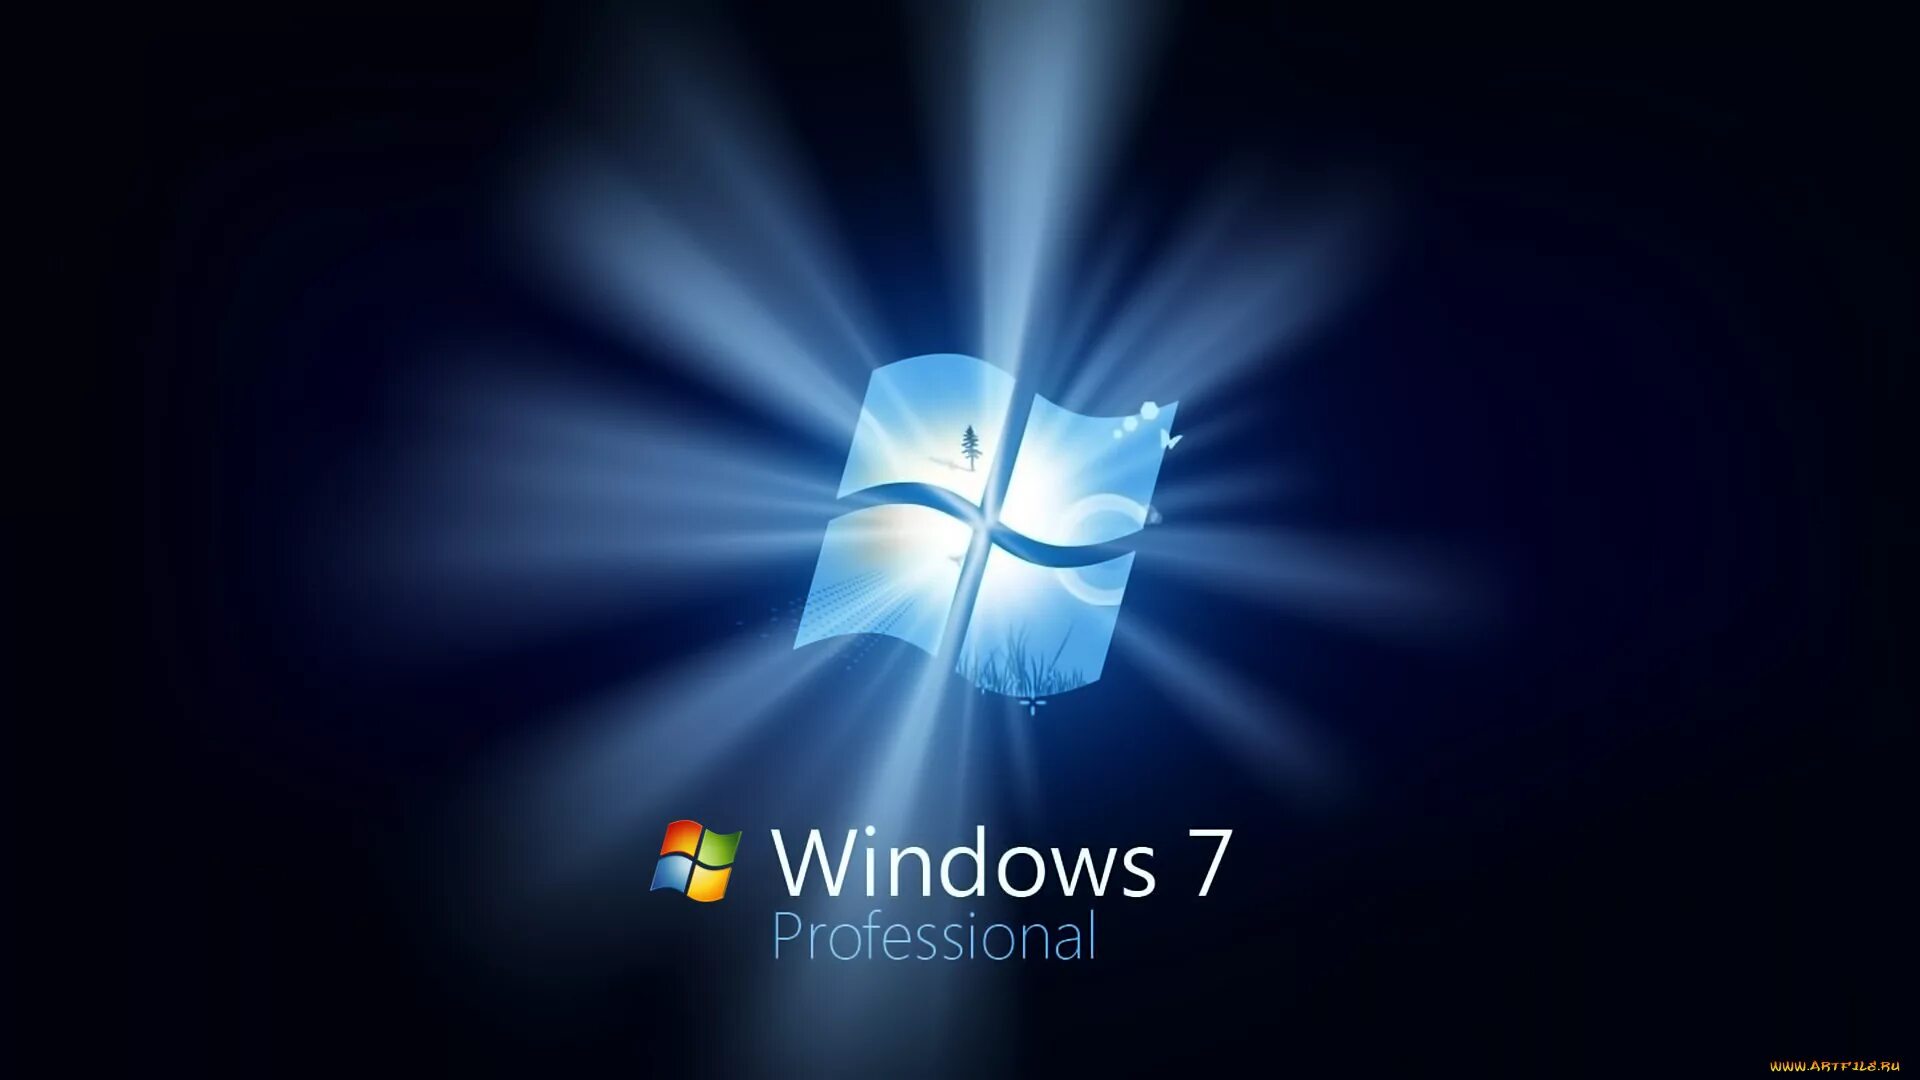 Windows 7 рабочий стол. Картинки виндовс. Фон Windows 7. Windows 7 профессиональная. Windows 7 life